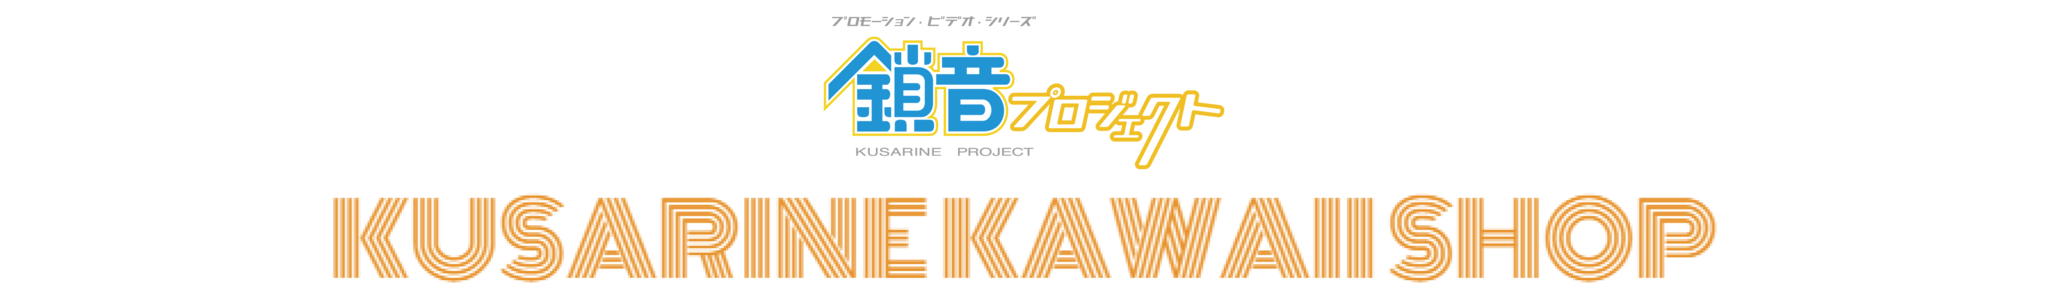 鎖音プロジェクト KAWAII SHOP